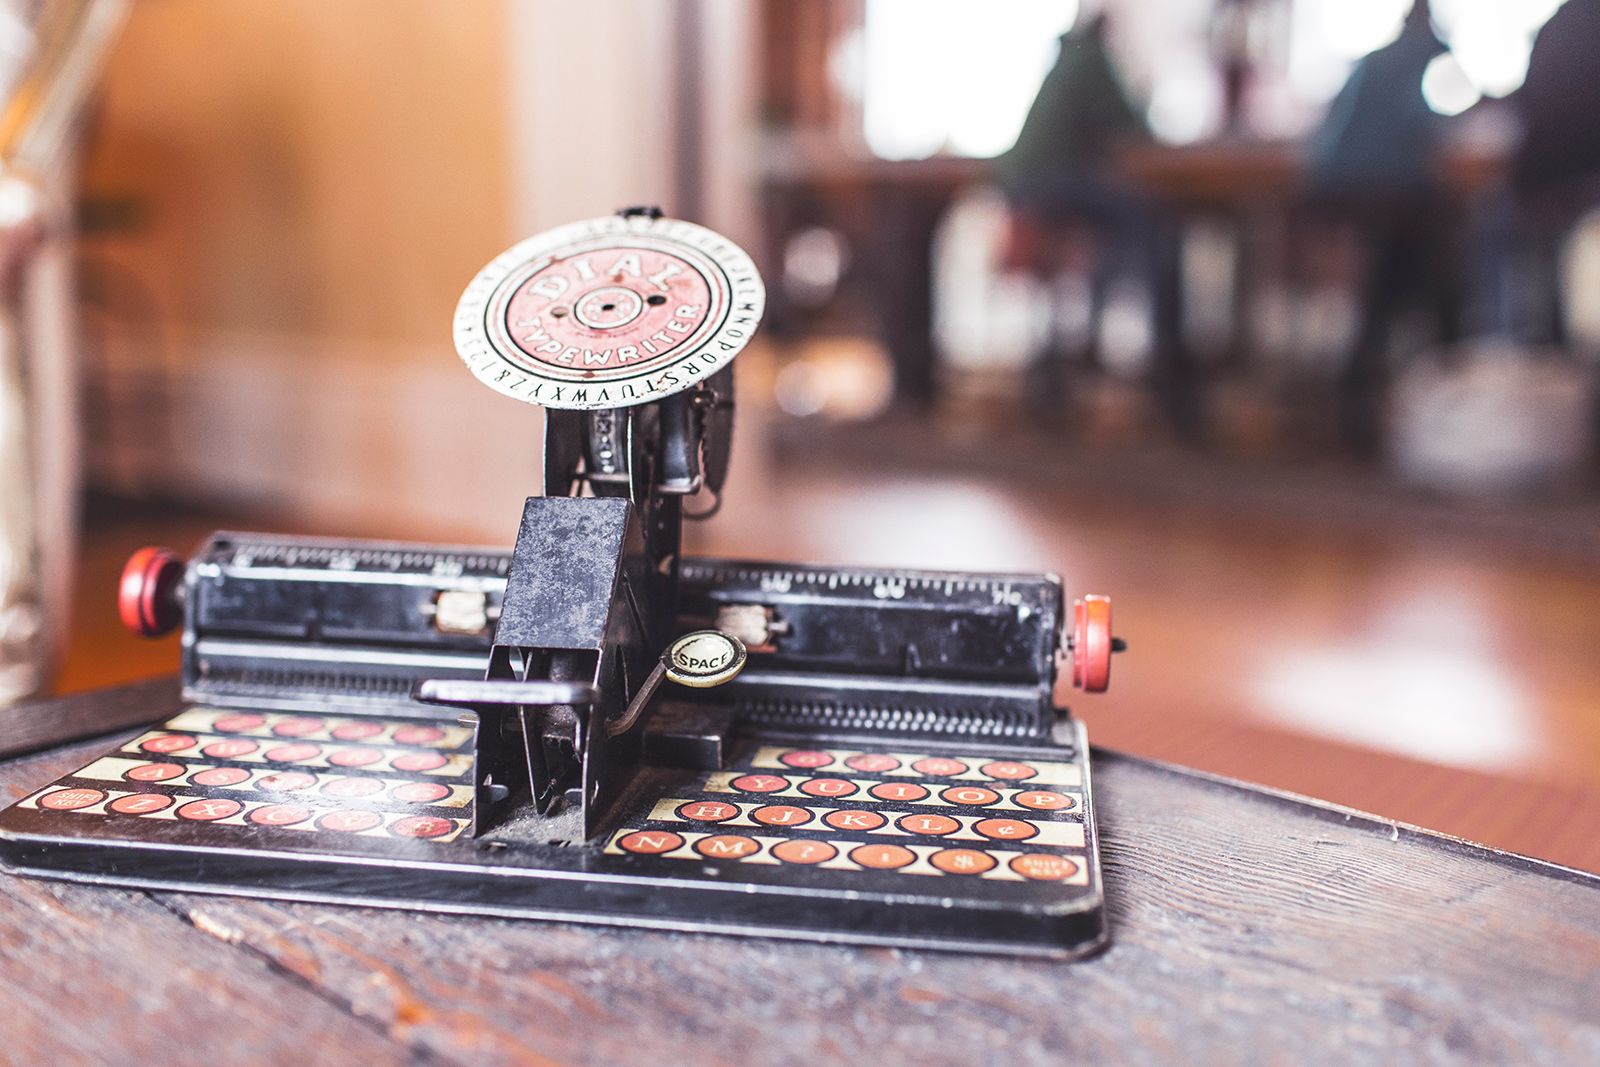 DIY Einrichtungsideen Schreibmaschine